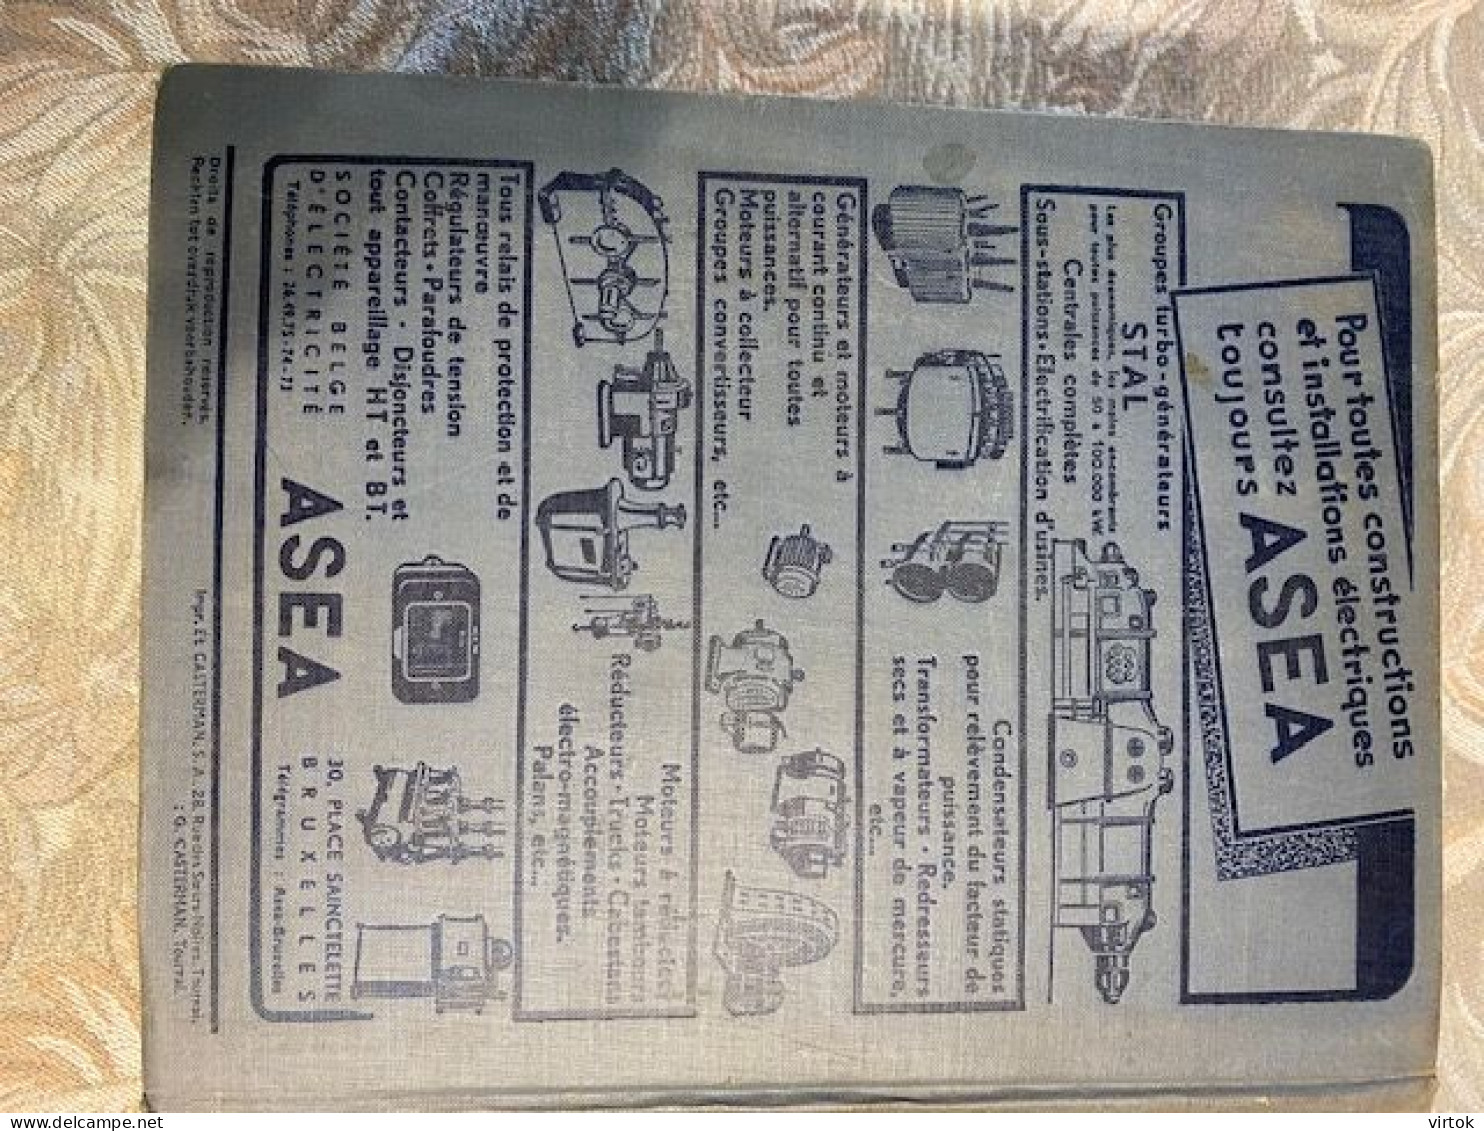 Officieel telefoonboek - België 1949-1950 = beroepengids ( gewicht 4.6 Kg - 3325 paginas)  21 x 26 x 11 cm